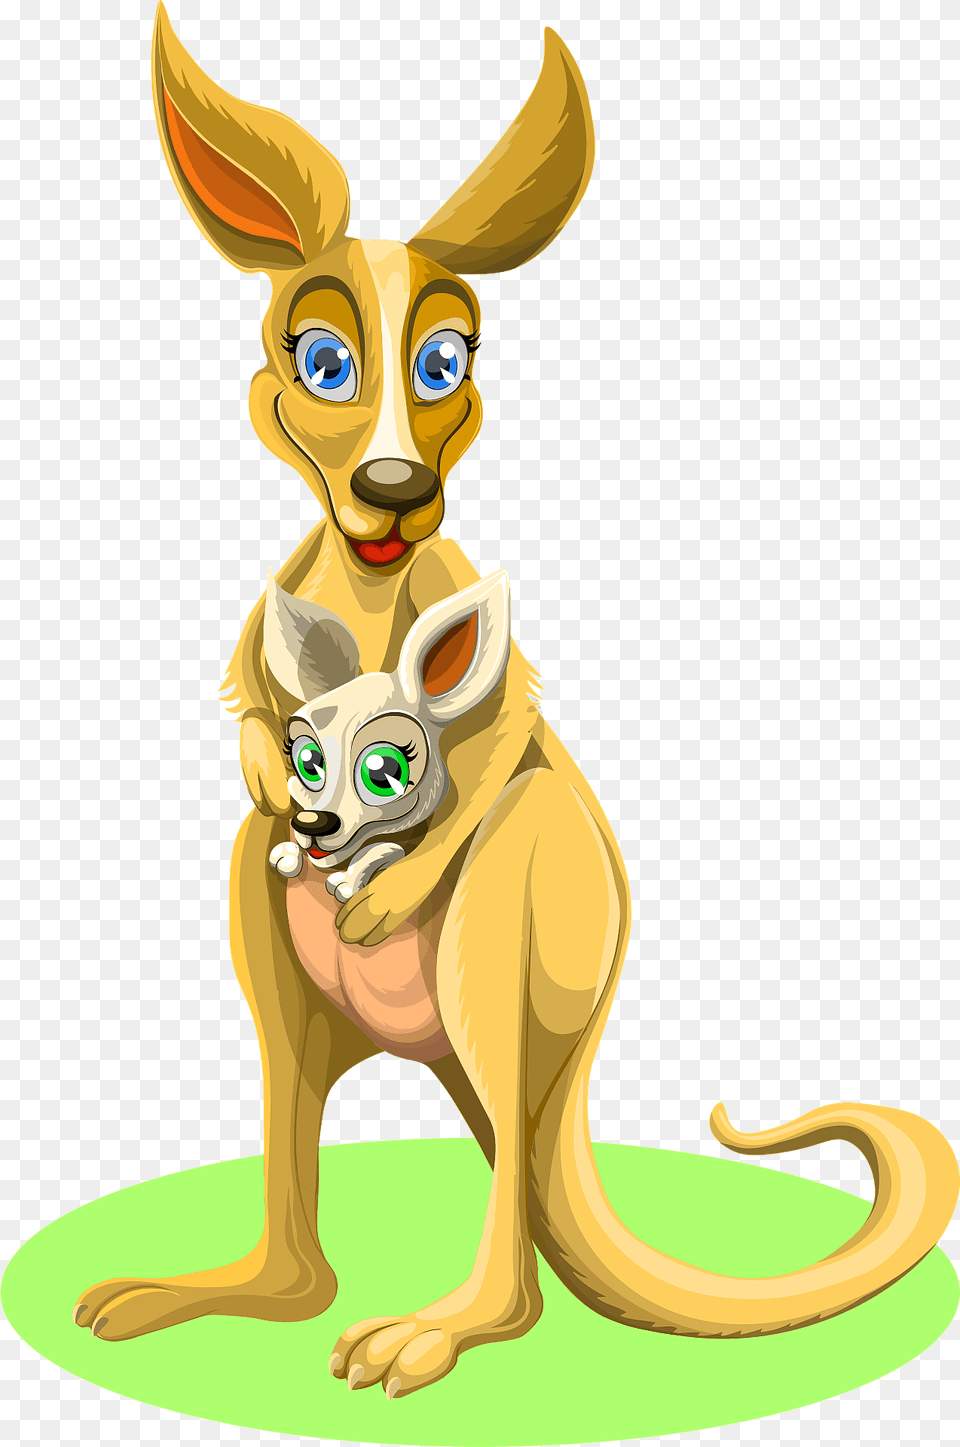 Kangaroo Animal Clipart, Mammal, Pet, Cat Free Transparent Png